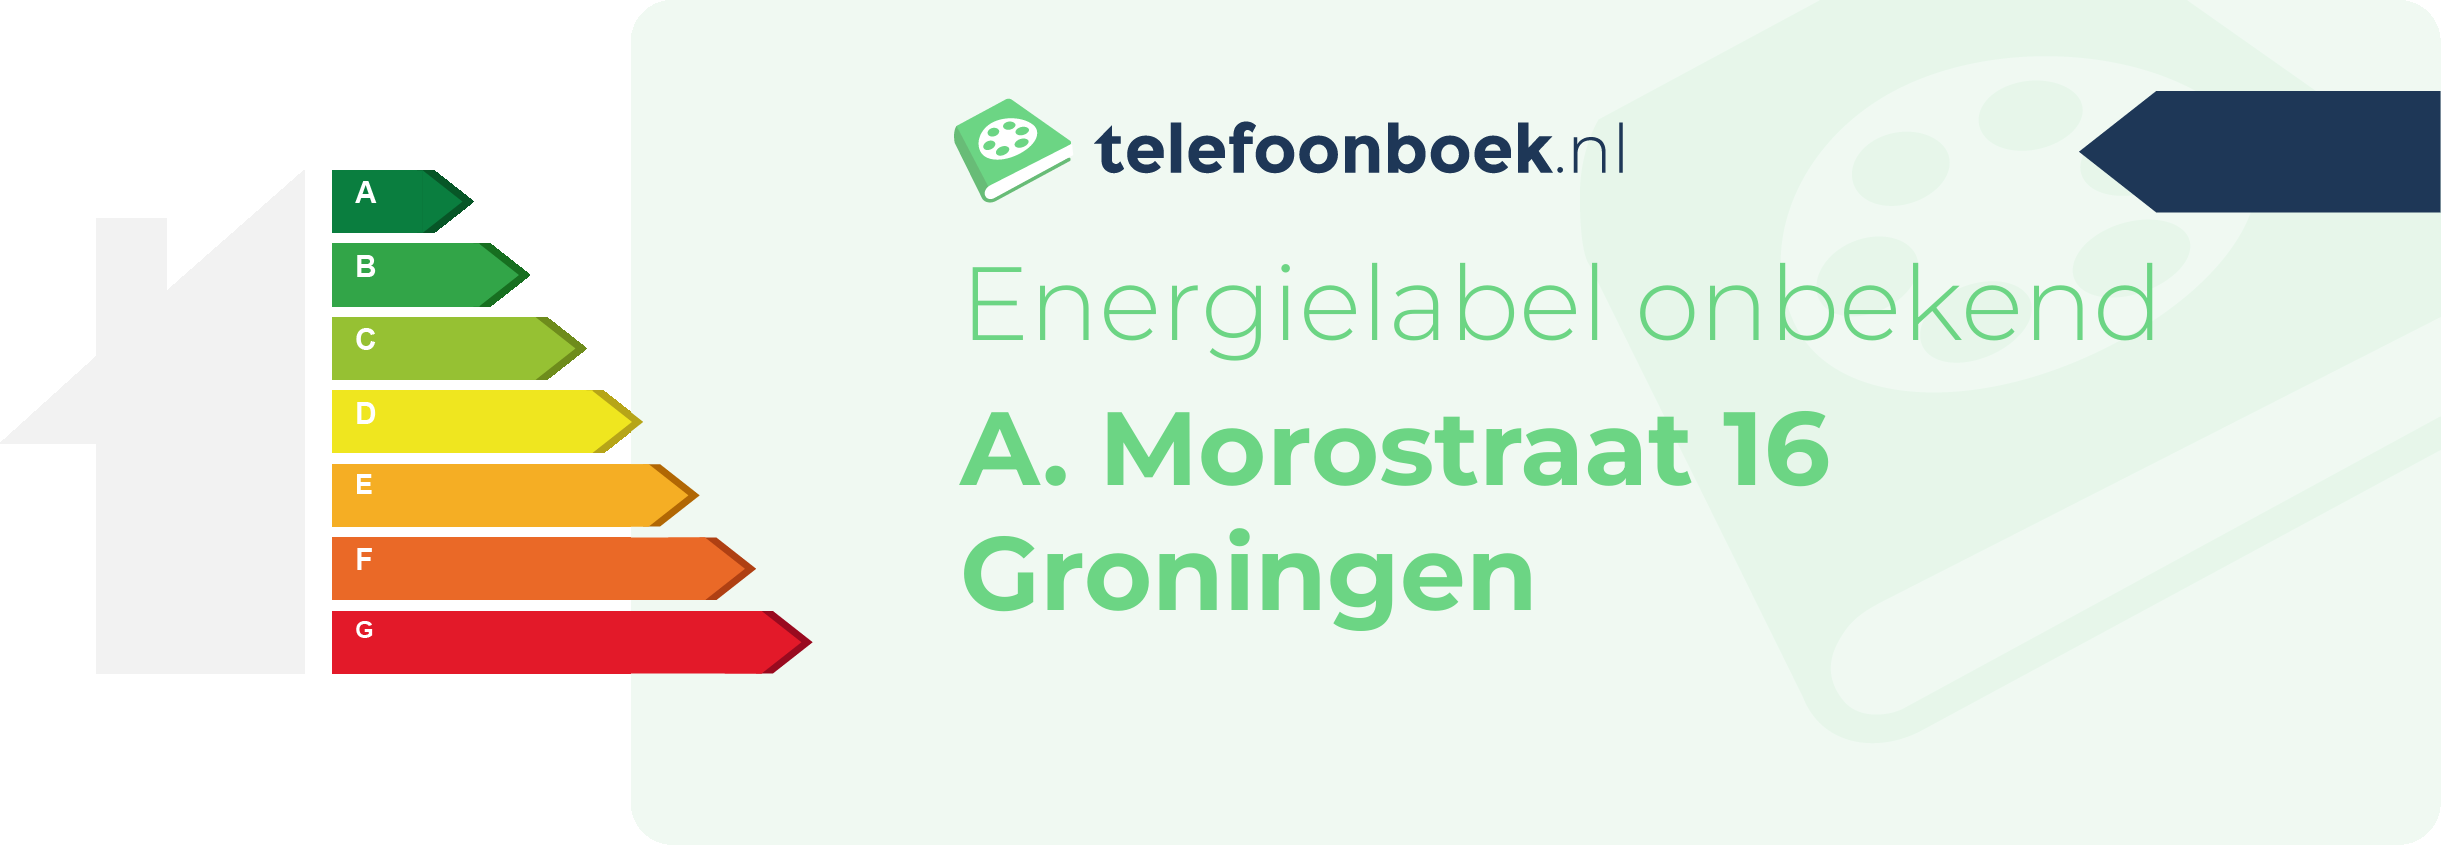 Energielabel A. Morostraat 16 Groningen